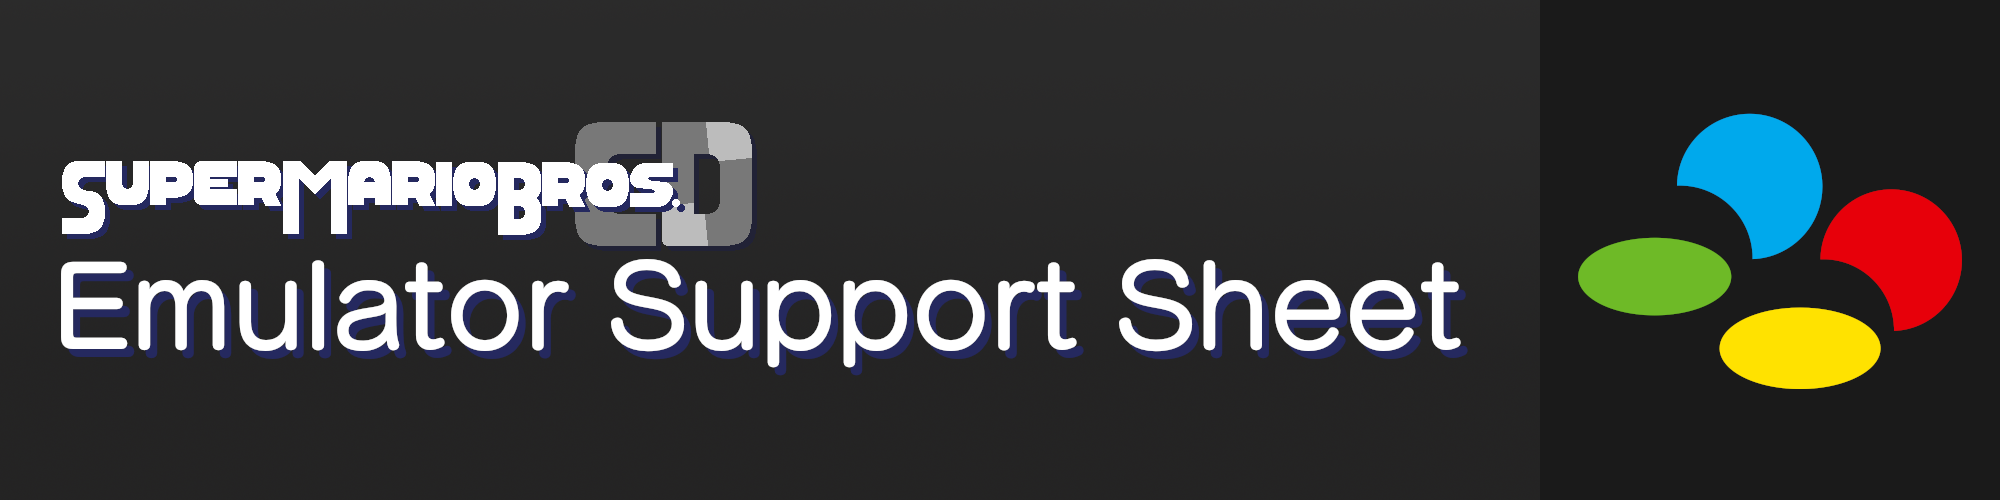 [SMBCD Emulator Support Sheet]